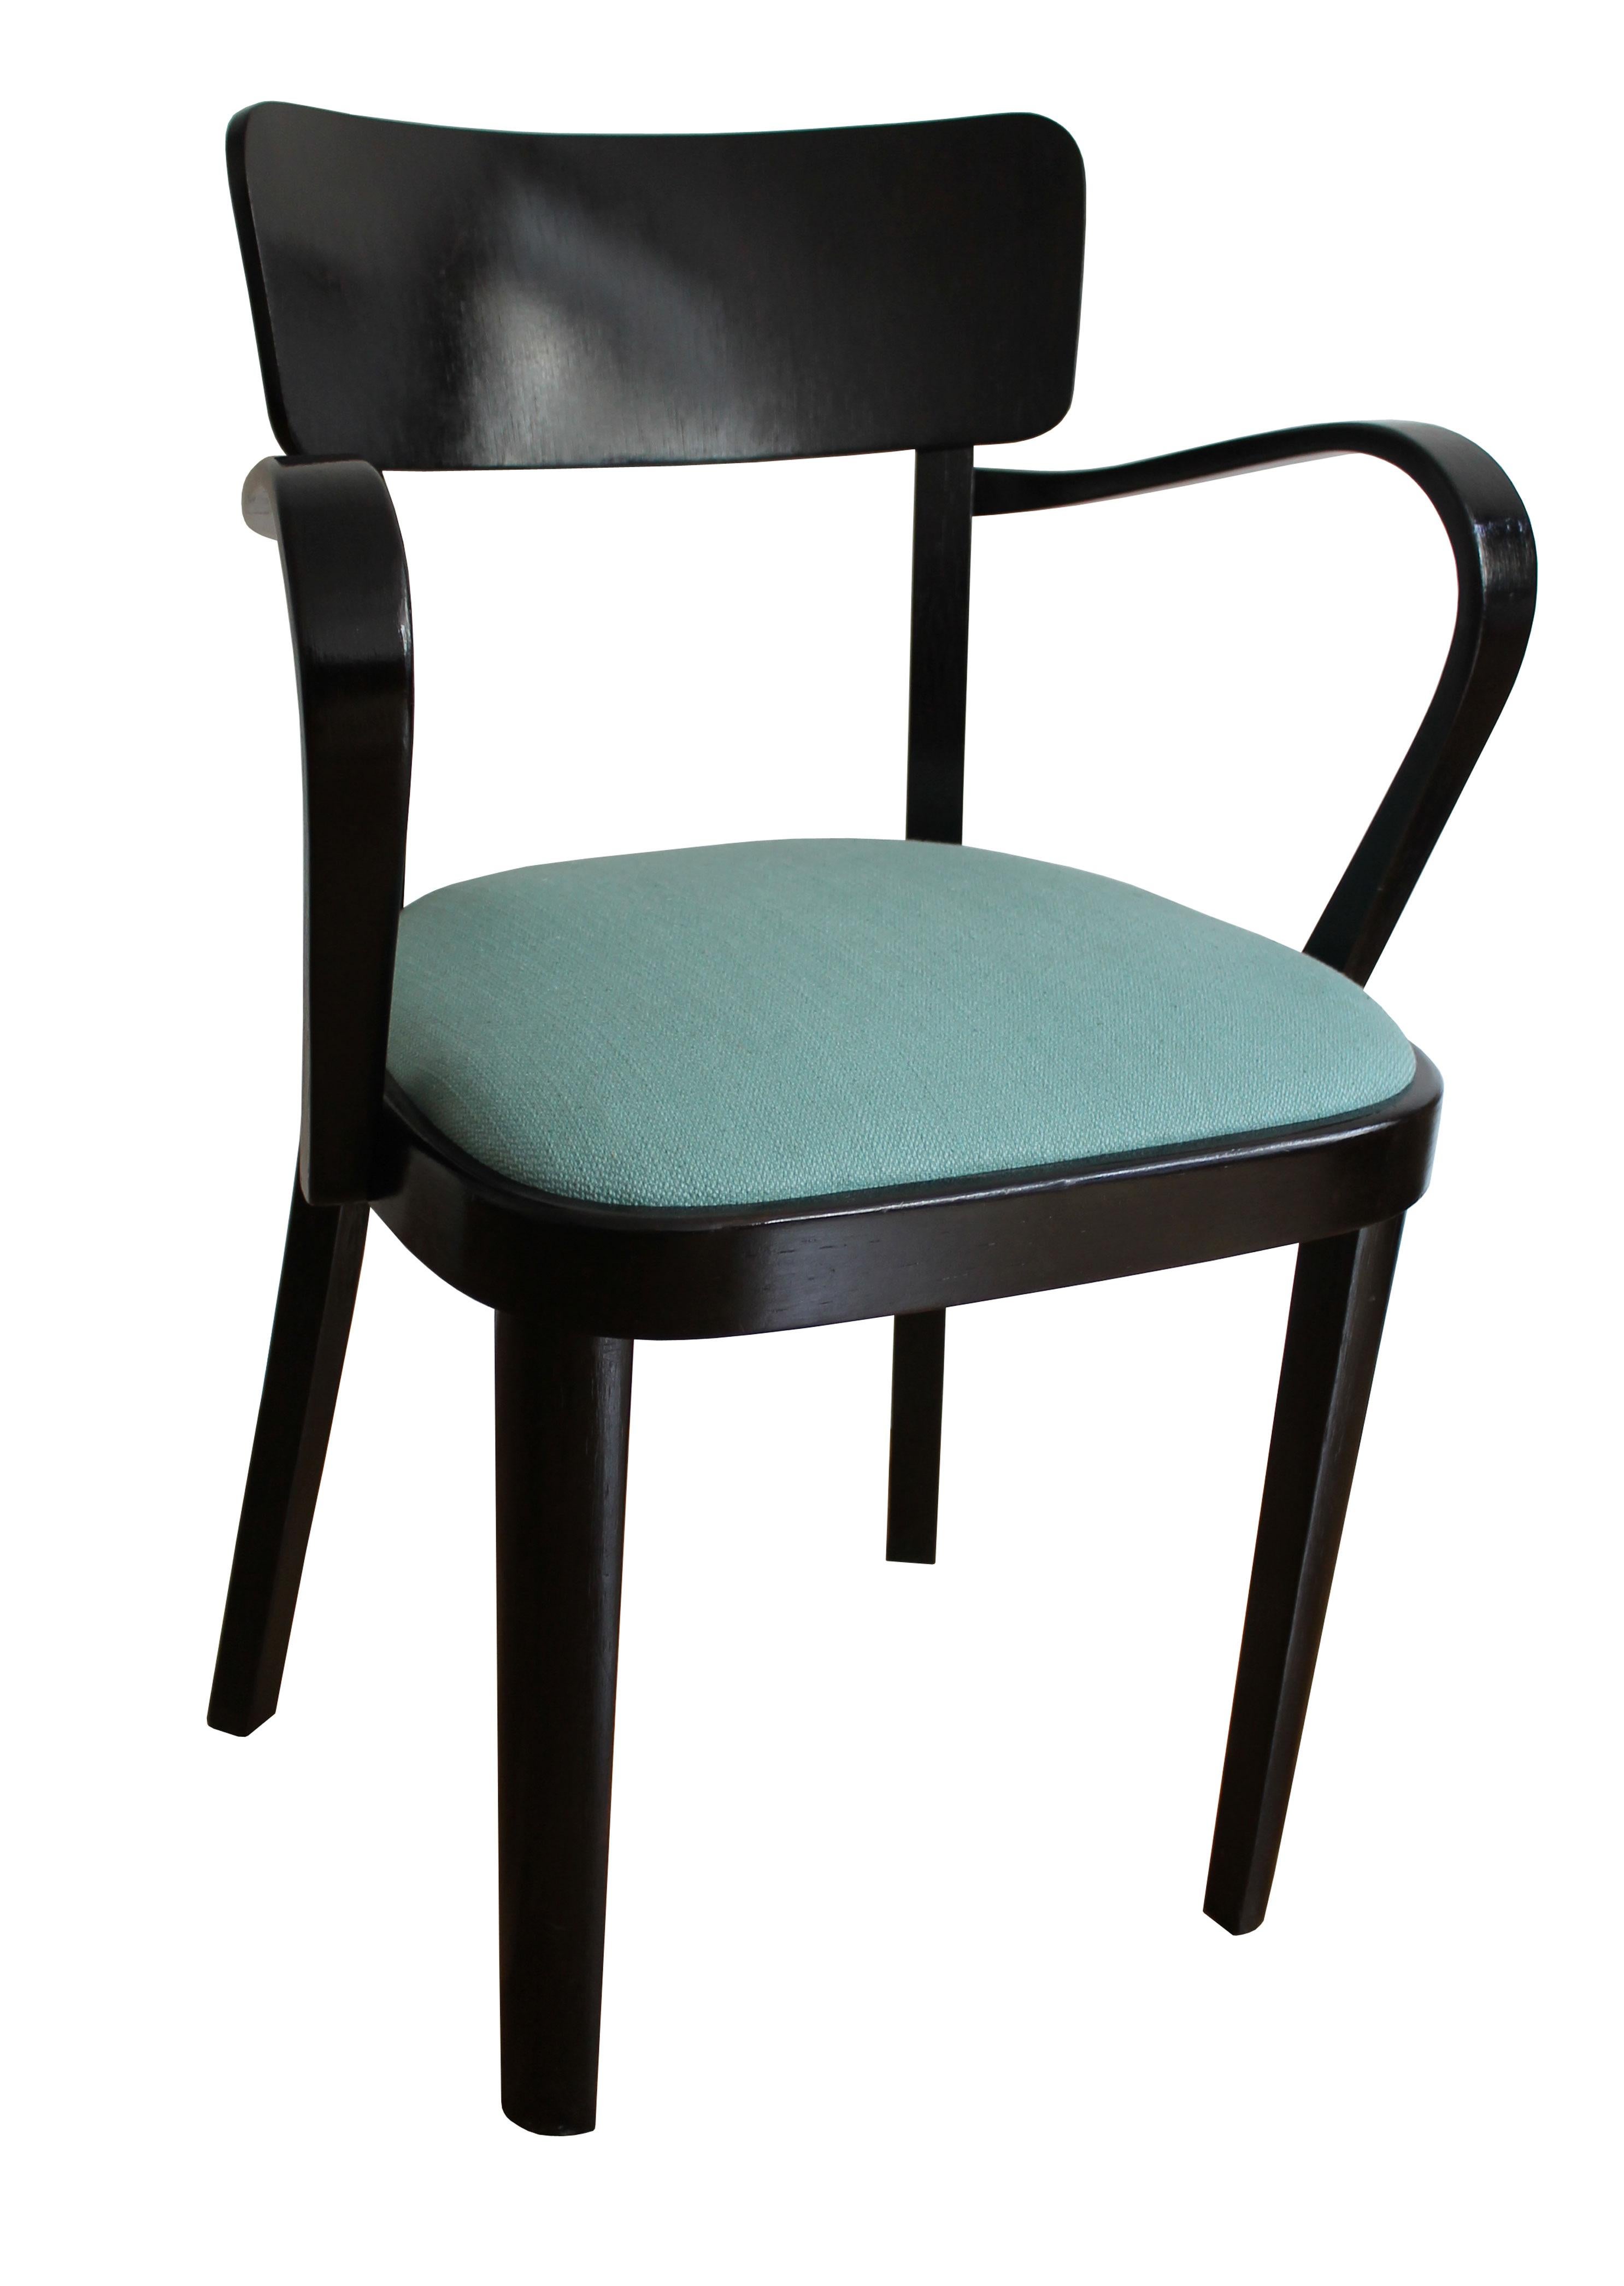 Dies ist ein Original-Stuhl produziert den späten 1940er Jahren. Der Stuhl hat kein Firmenlabel mehr, aber wir glauben, dass er von der Firma Thonet in einer ihrer Fabriken in der ehemaligen Tschechoslowakei hergestellt wurde. 

Wir glauben auch,